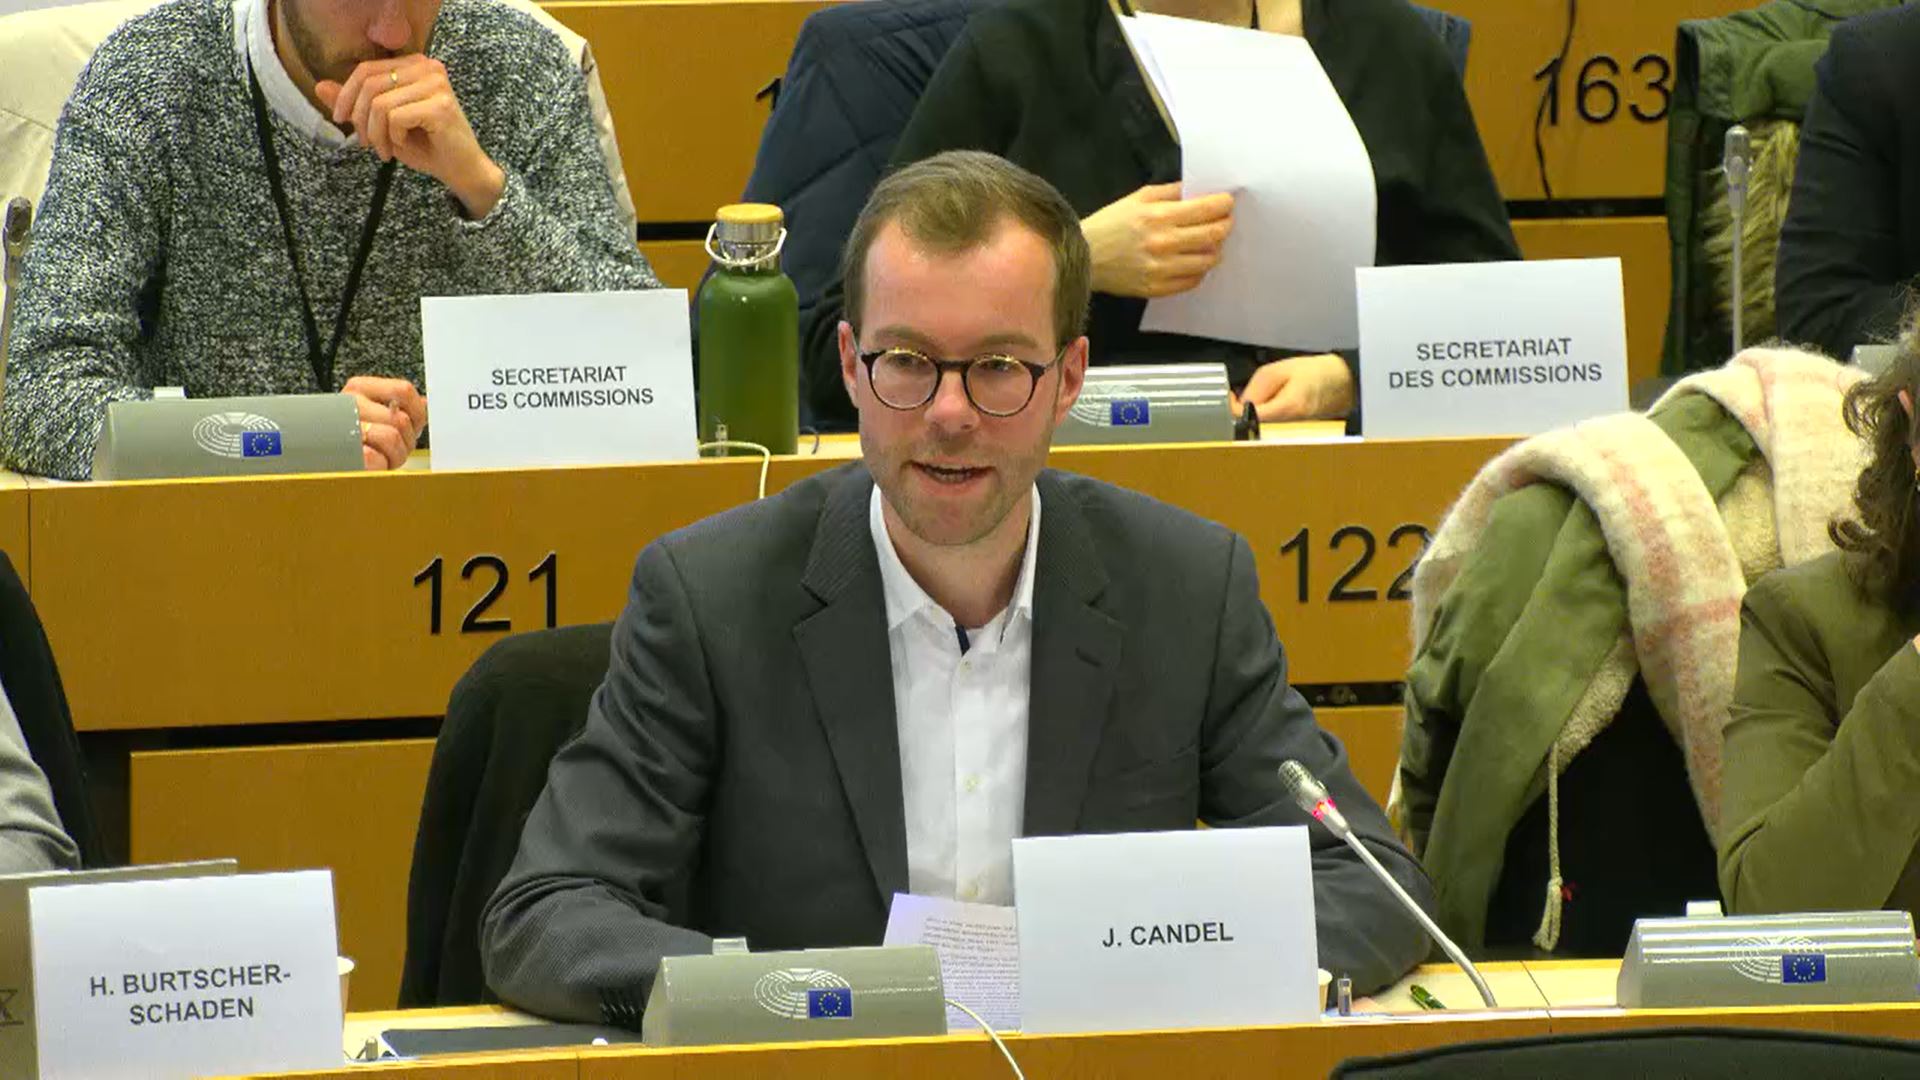 Jeroen Candel addresses EU-Parliament on pesticide decree